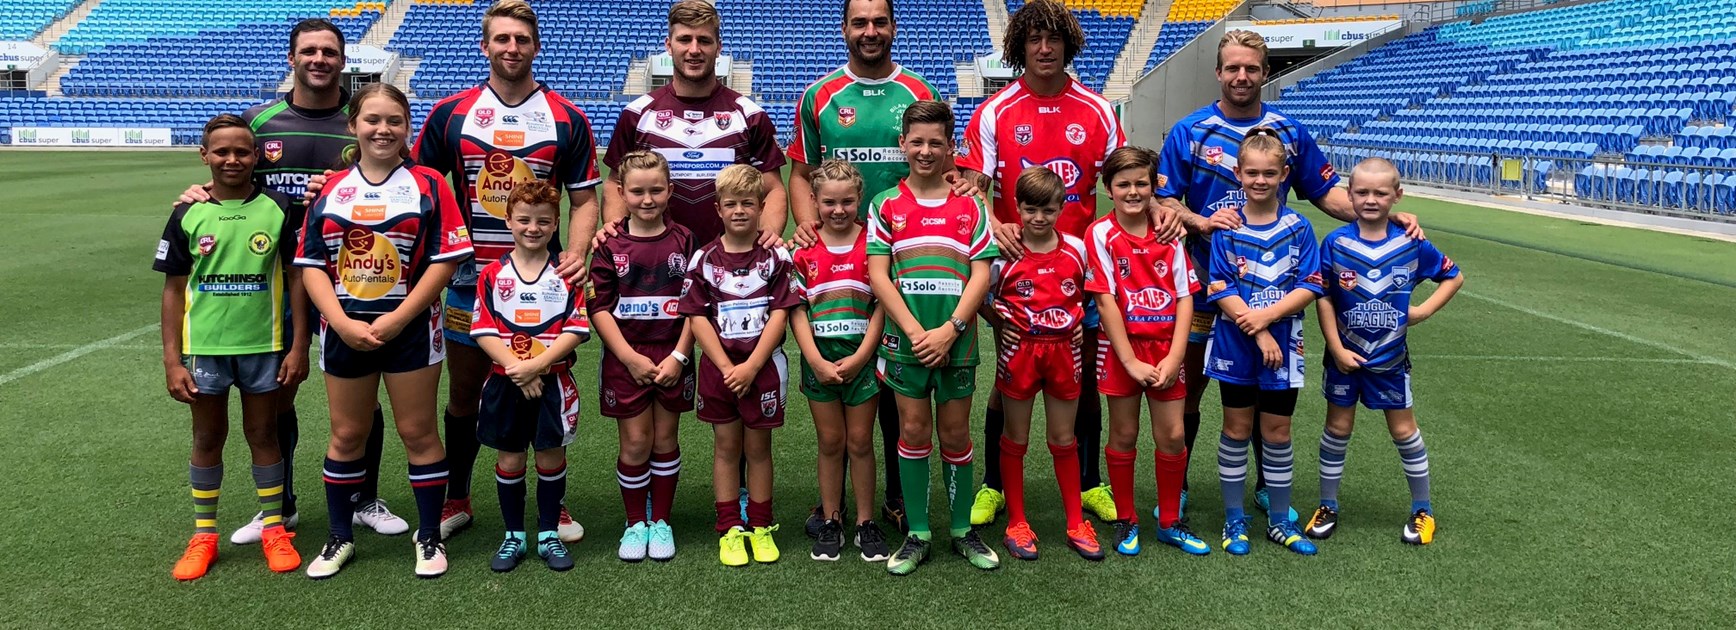 Titans help launch Junior Rugby League season